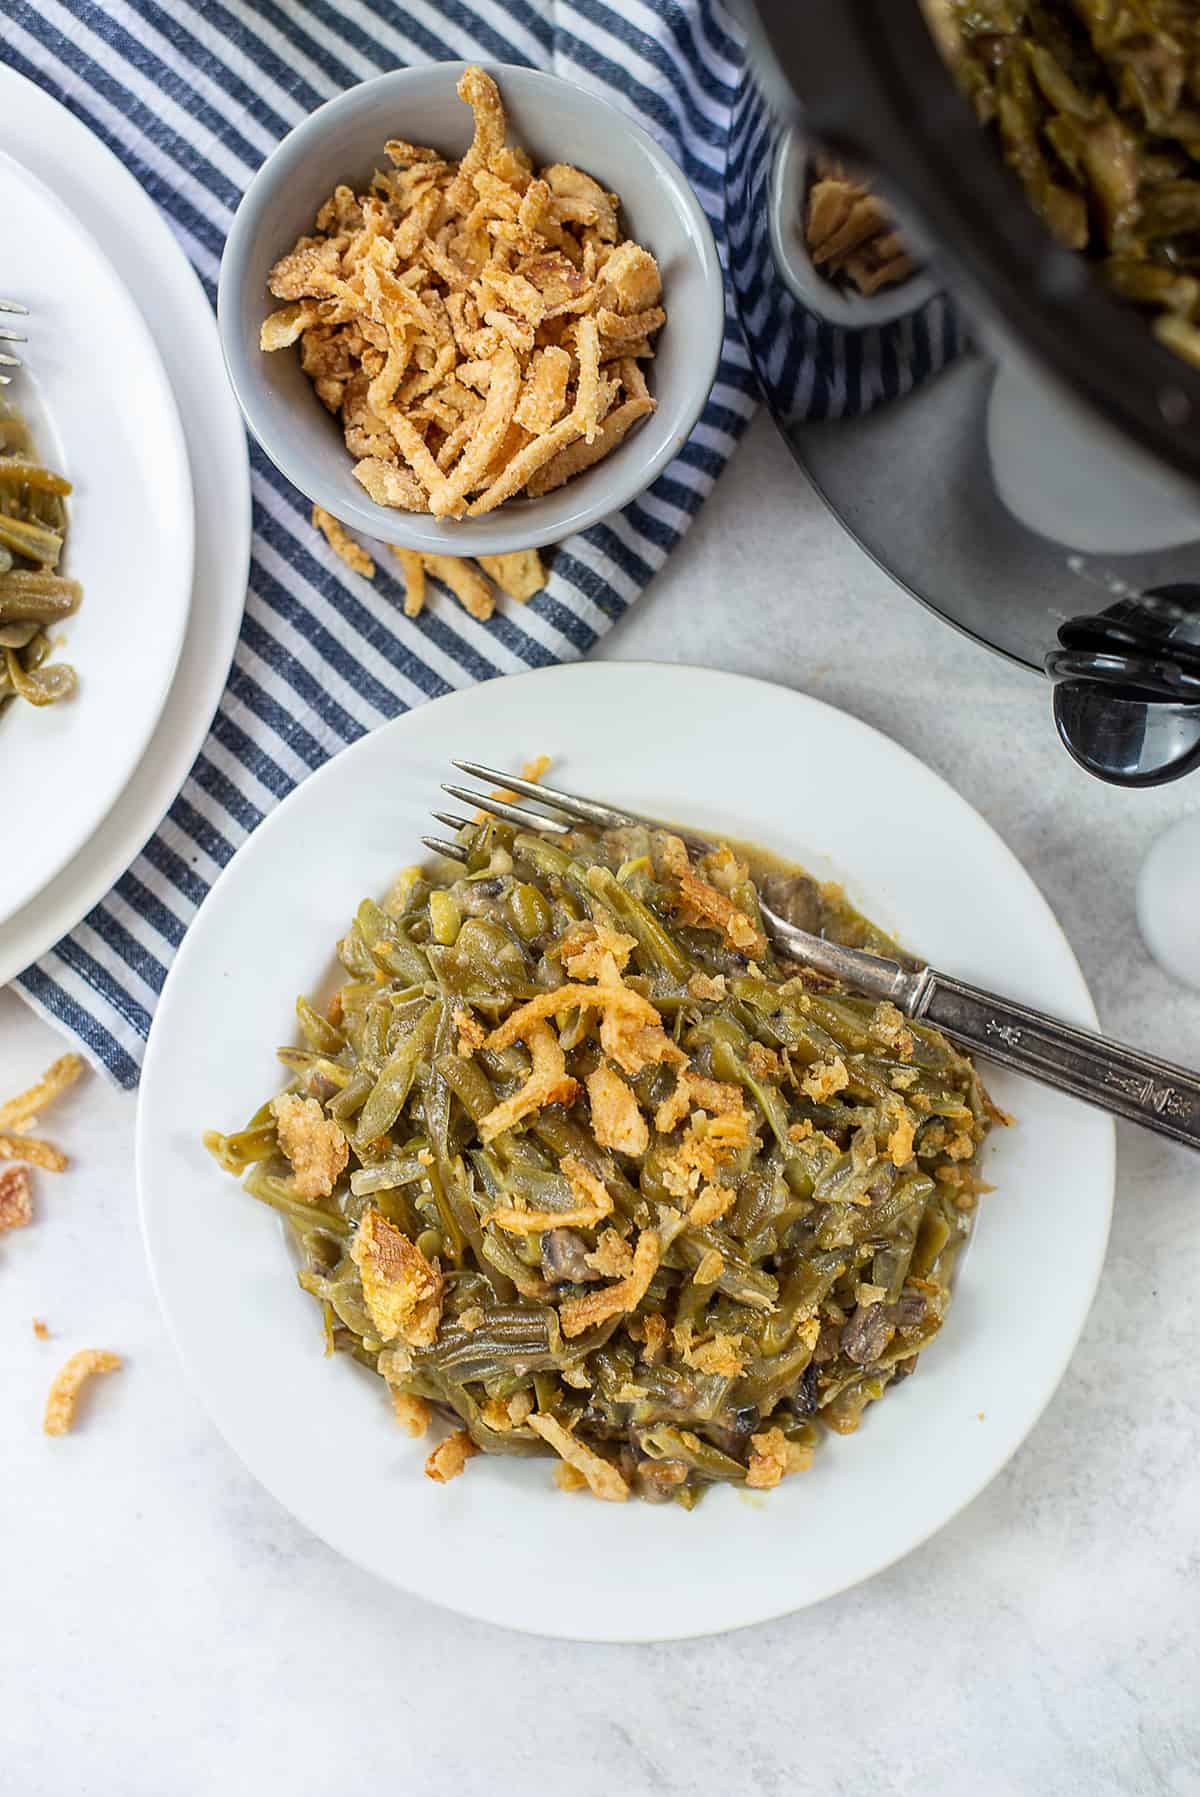 https://www.bunsinmyoven.com/wp-content/uploads/2018/10/slow-cooker-green-bean-casserole-1.jpg